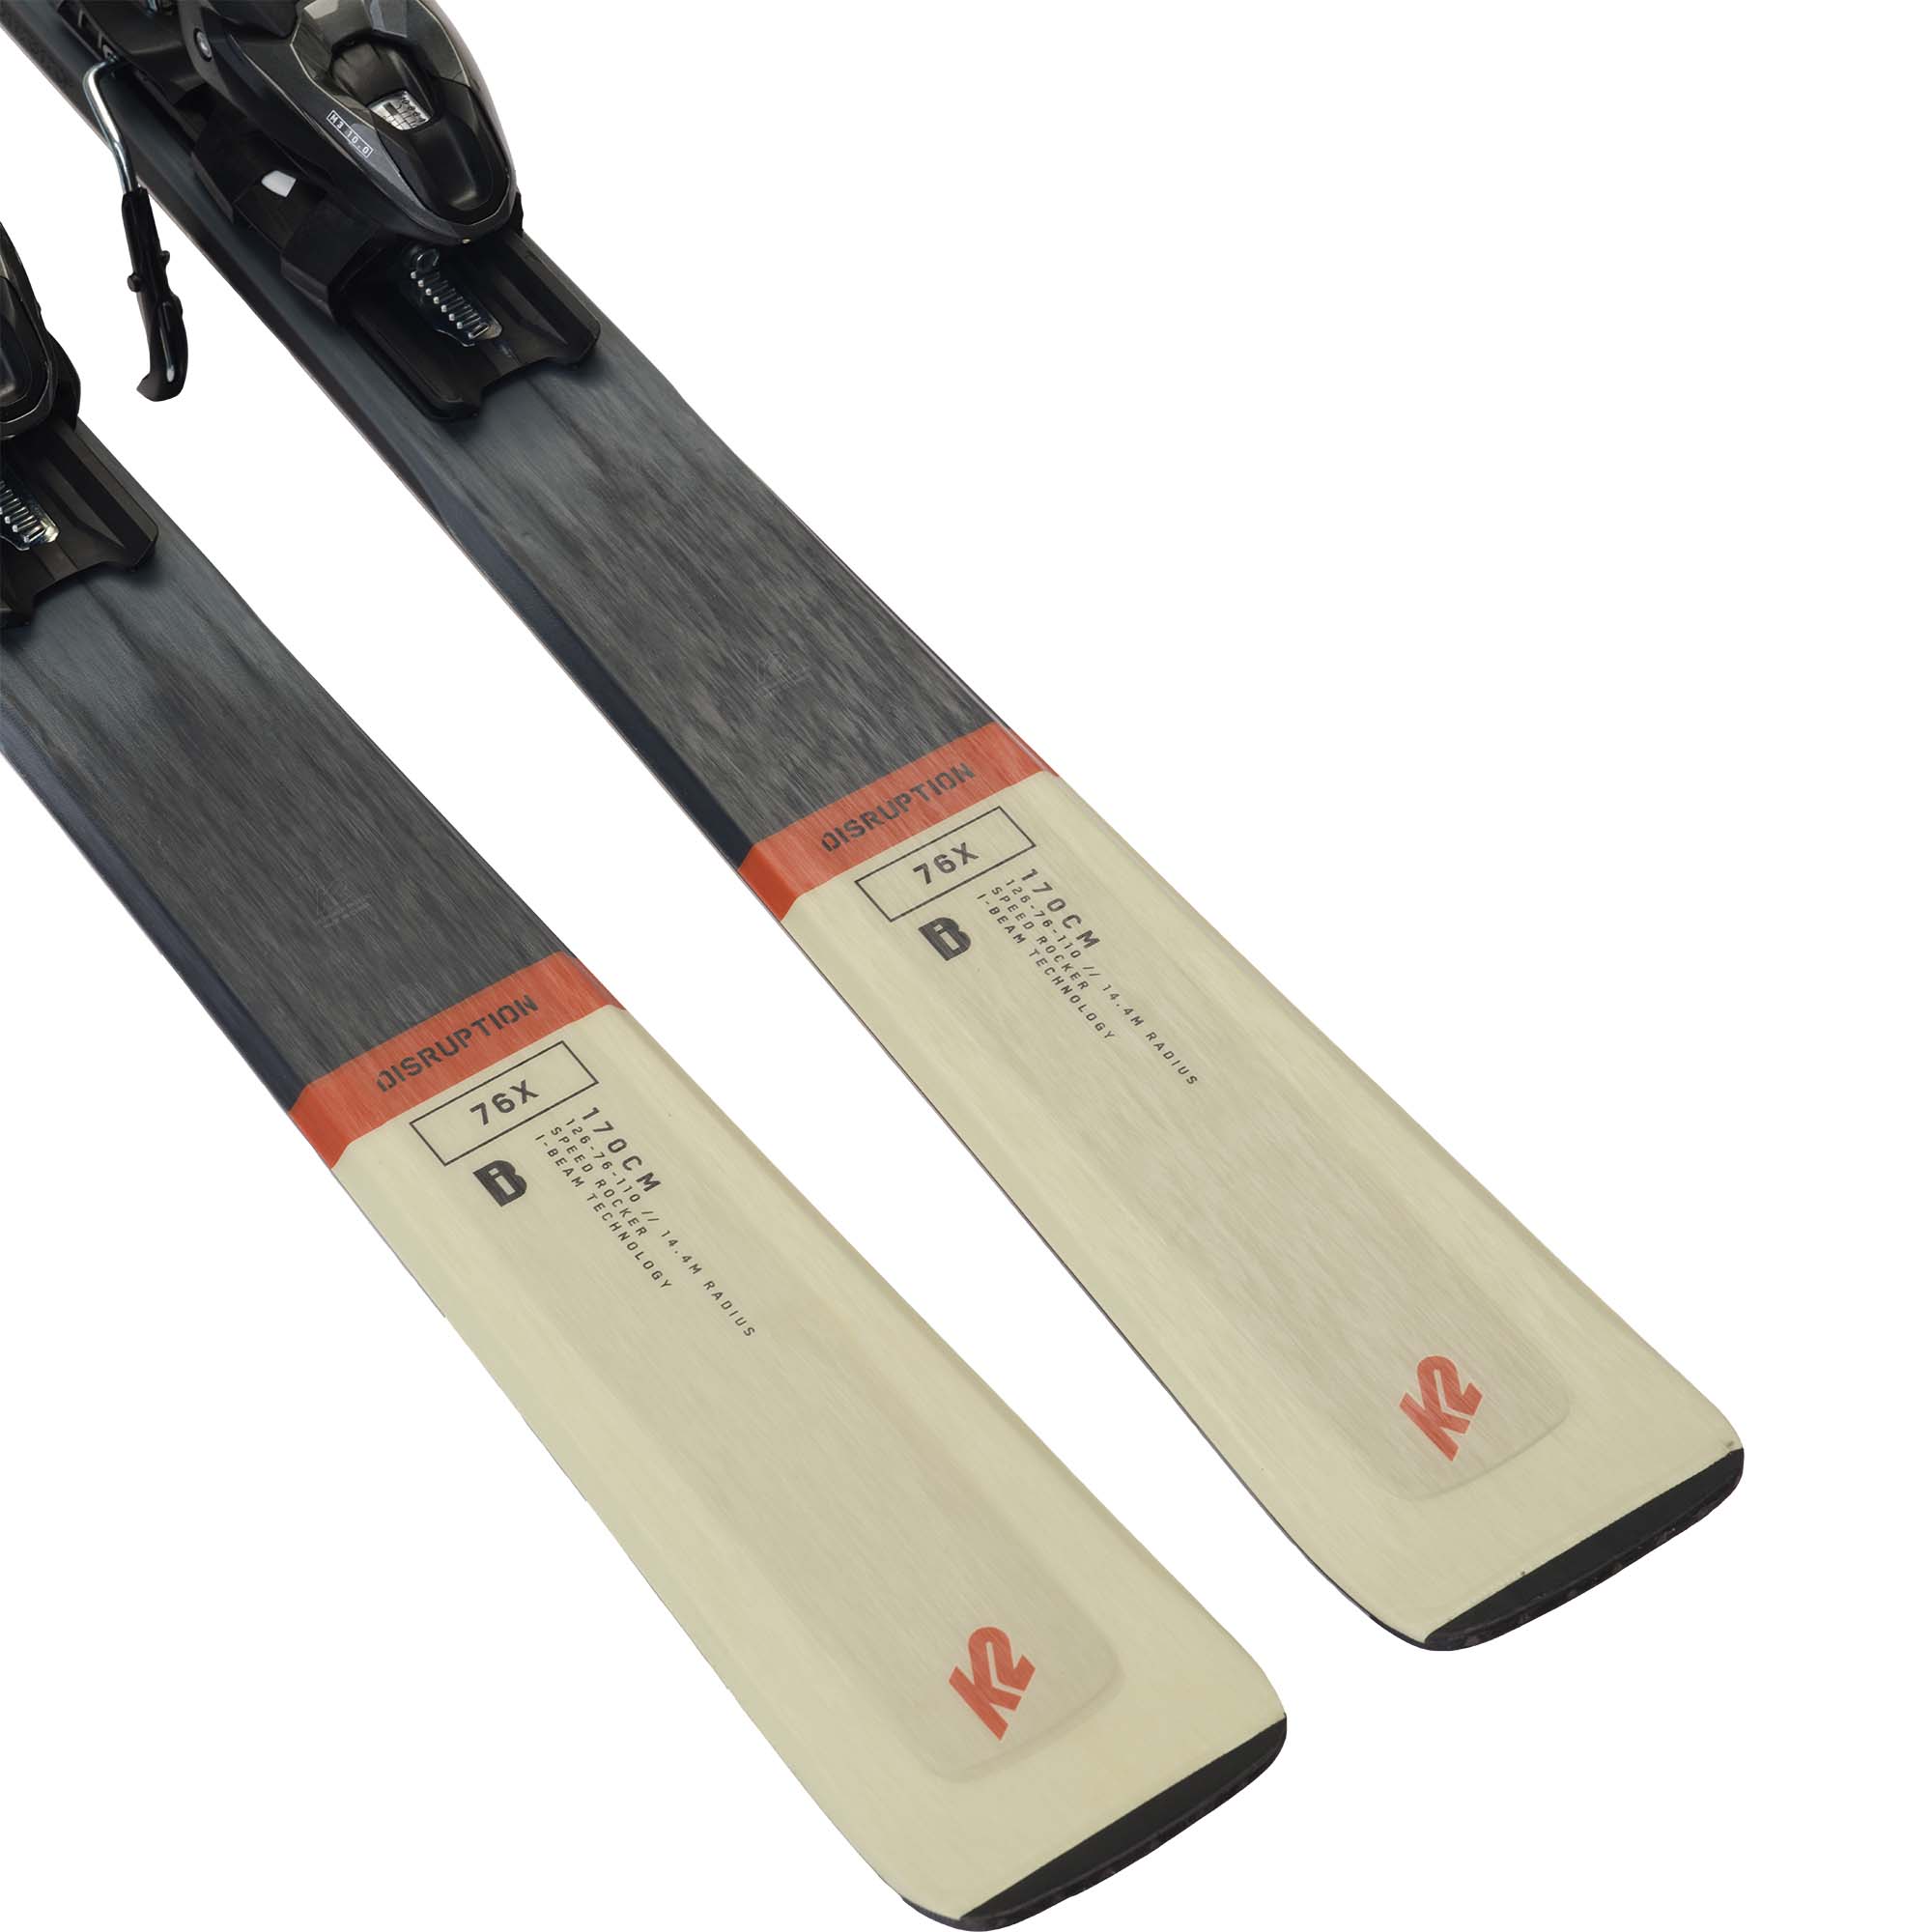 K2 Disruption 76X + M3 10 Compact Quikclik Skis